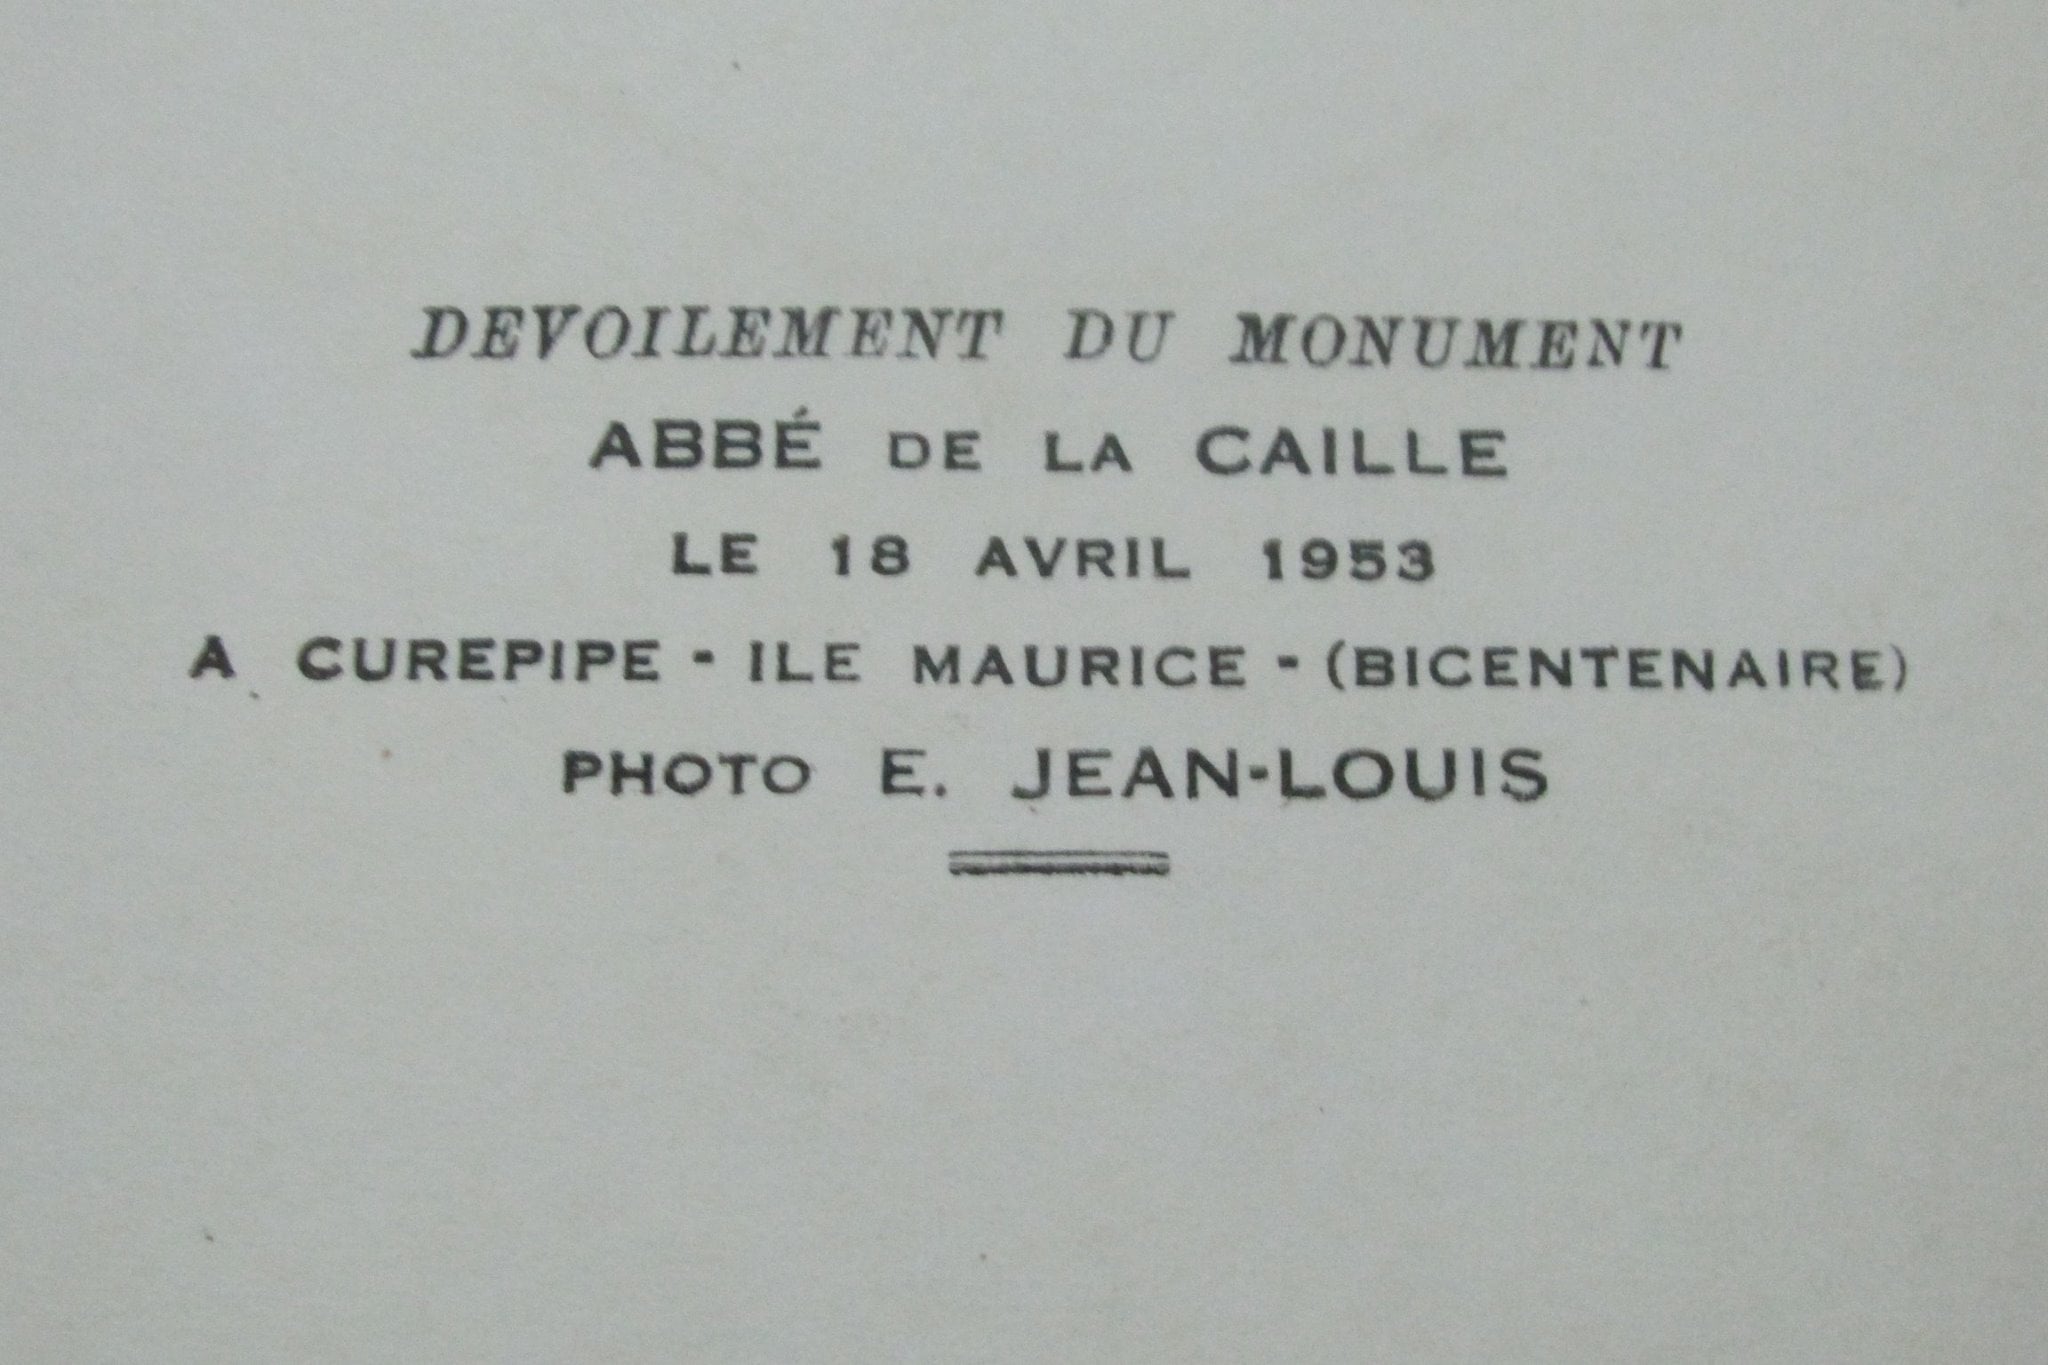 Curepipe : Vol d'une plaque commémorative de l’astronome français l’abbé Nicolas-Louis de la Caille  